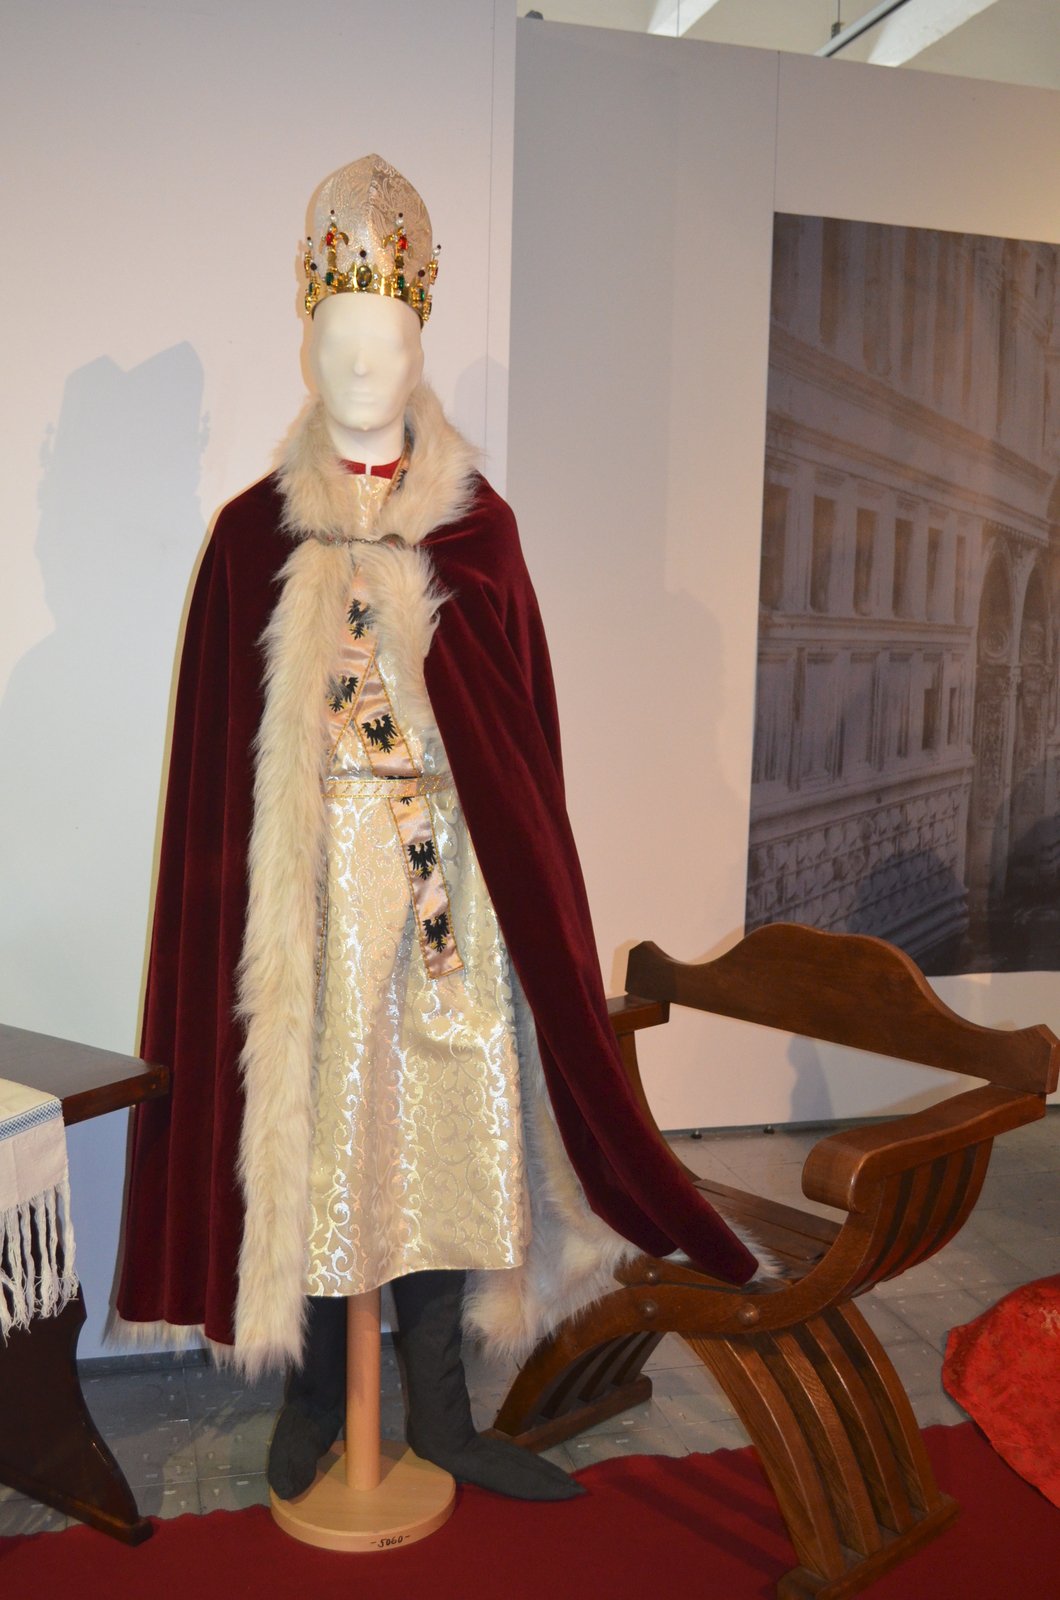 Císařský ceremoniální oděv podle vyobrazení Karla IV. z roku 1371. Skládá se z pláště, dalmatiky – tuniky, štóly s orlicemi, cingula – opasku, mitry a koruny.